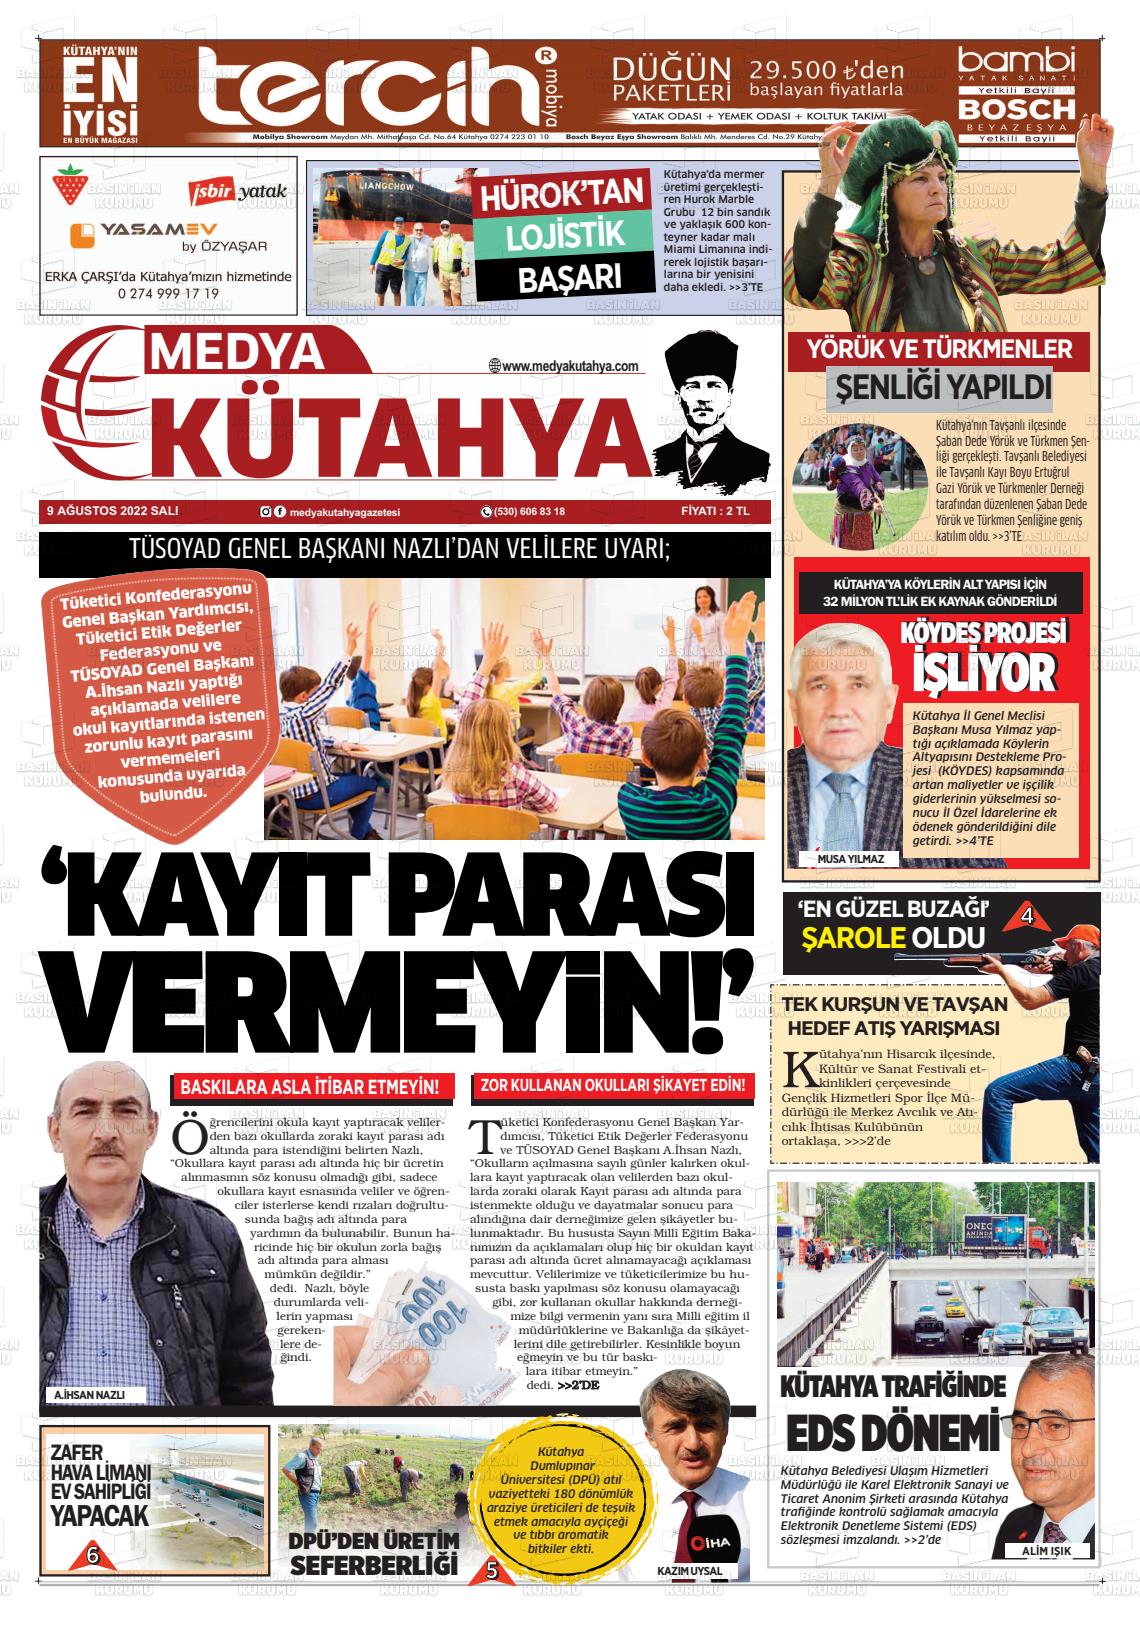 09 Ağustos 2022 Medya Kütahya Gazete Manşeti